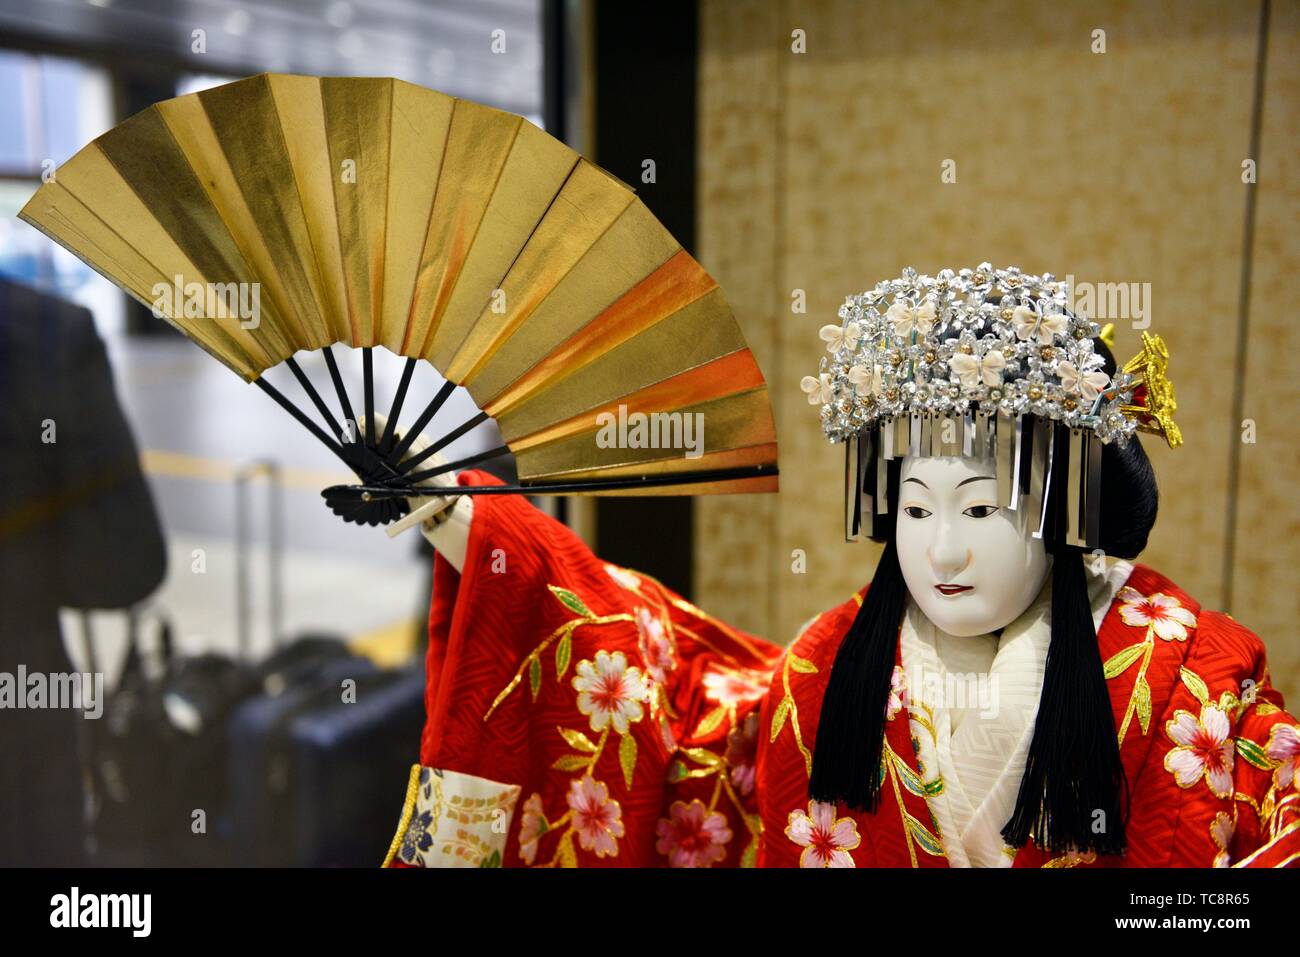 Poupée Mignonne Dans Le Kimono Une Poupée Mignonne S'habille Dans Un Kimono  Rouge Image stock - Image du asiatique, beau: 117180701